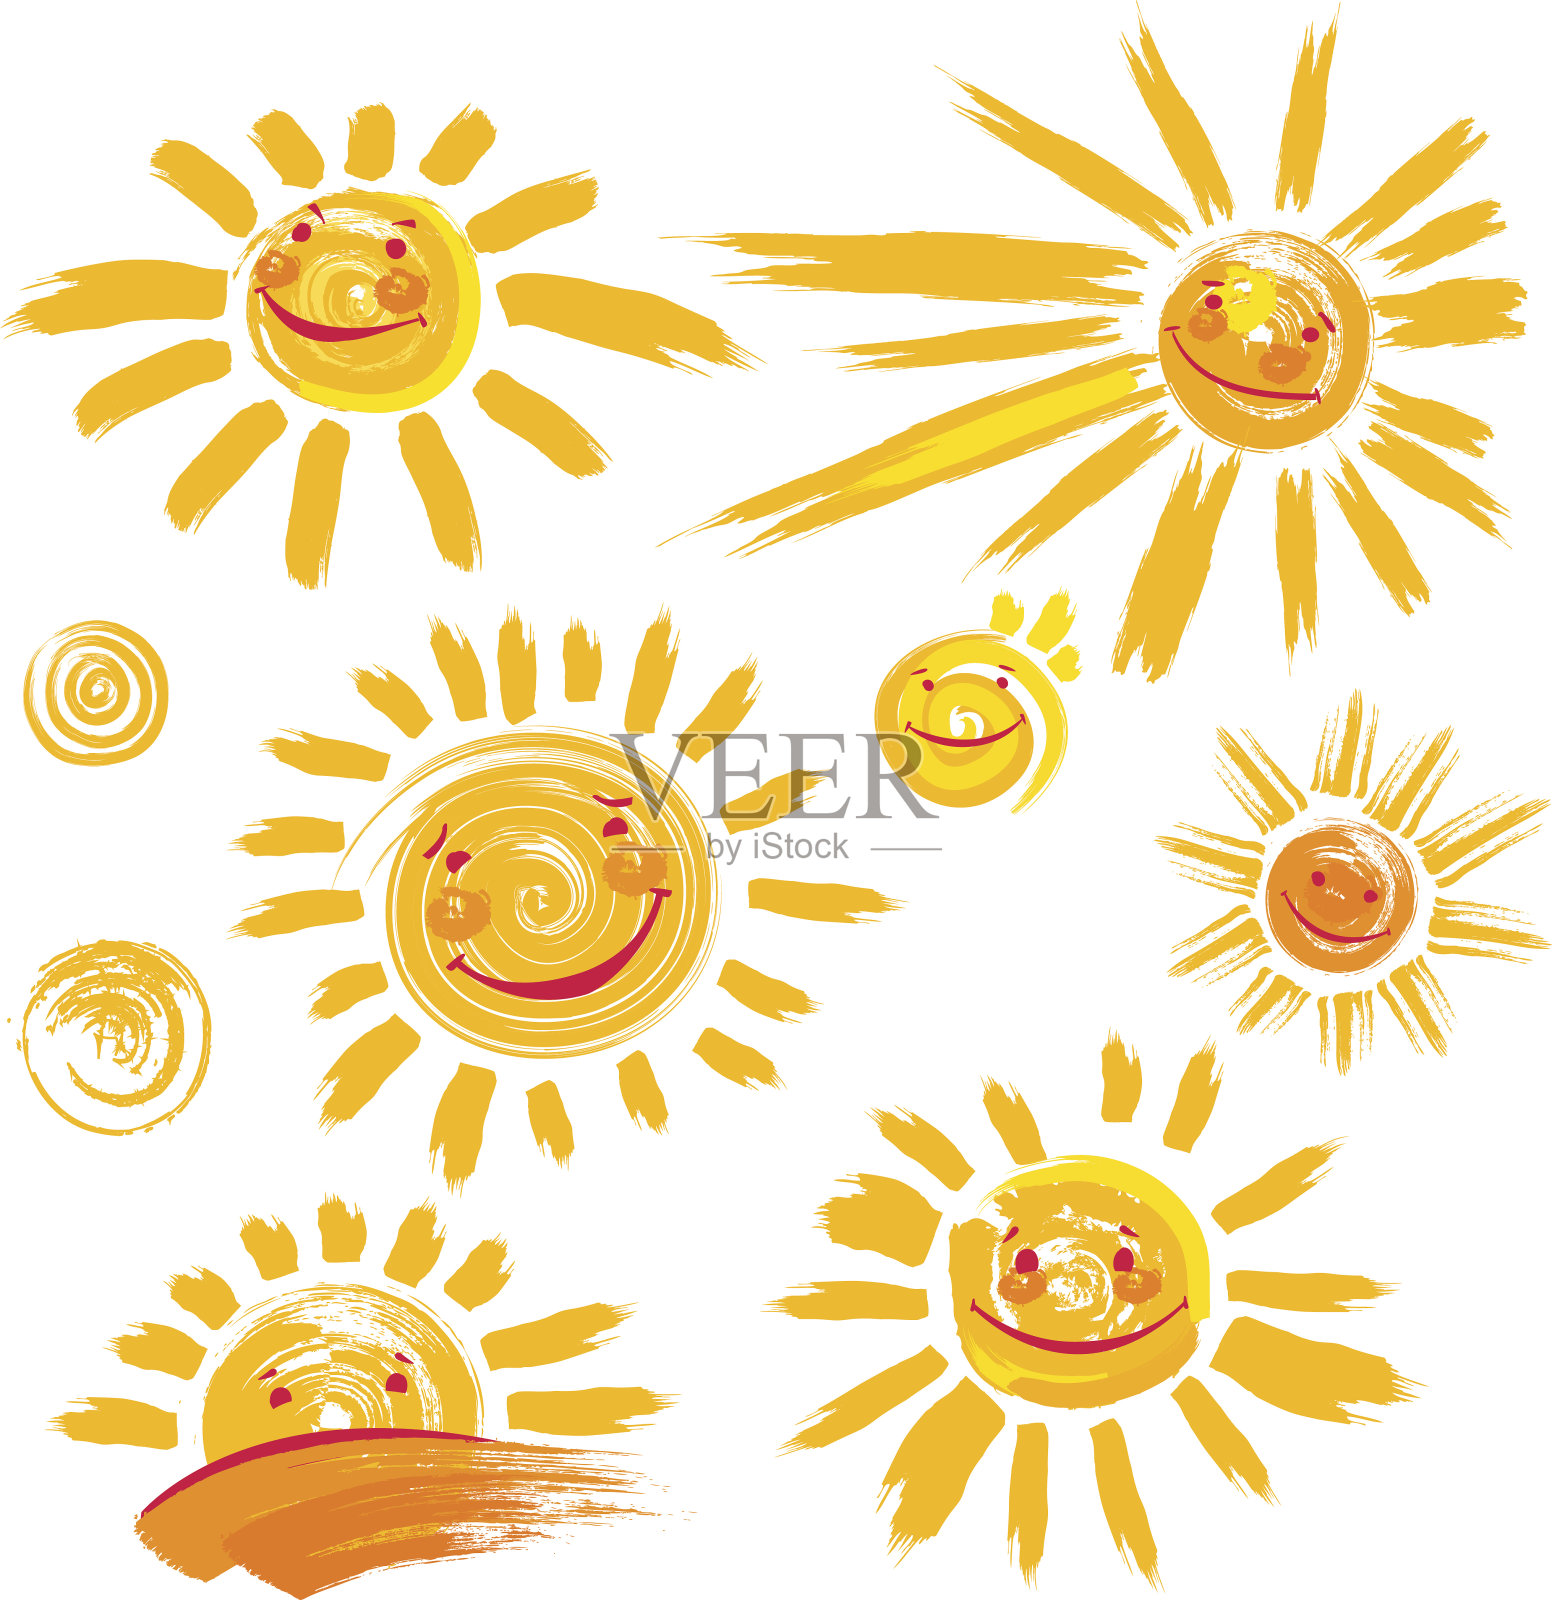 一套手绘太阳符号与微笑插画图片素材